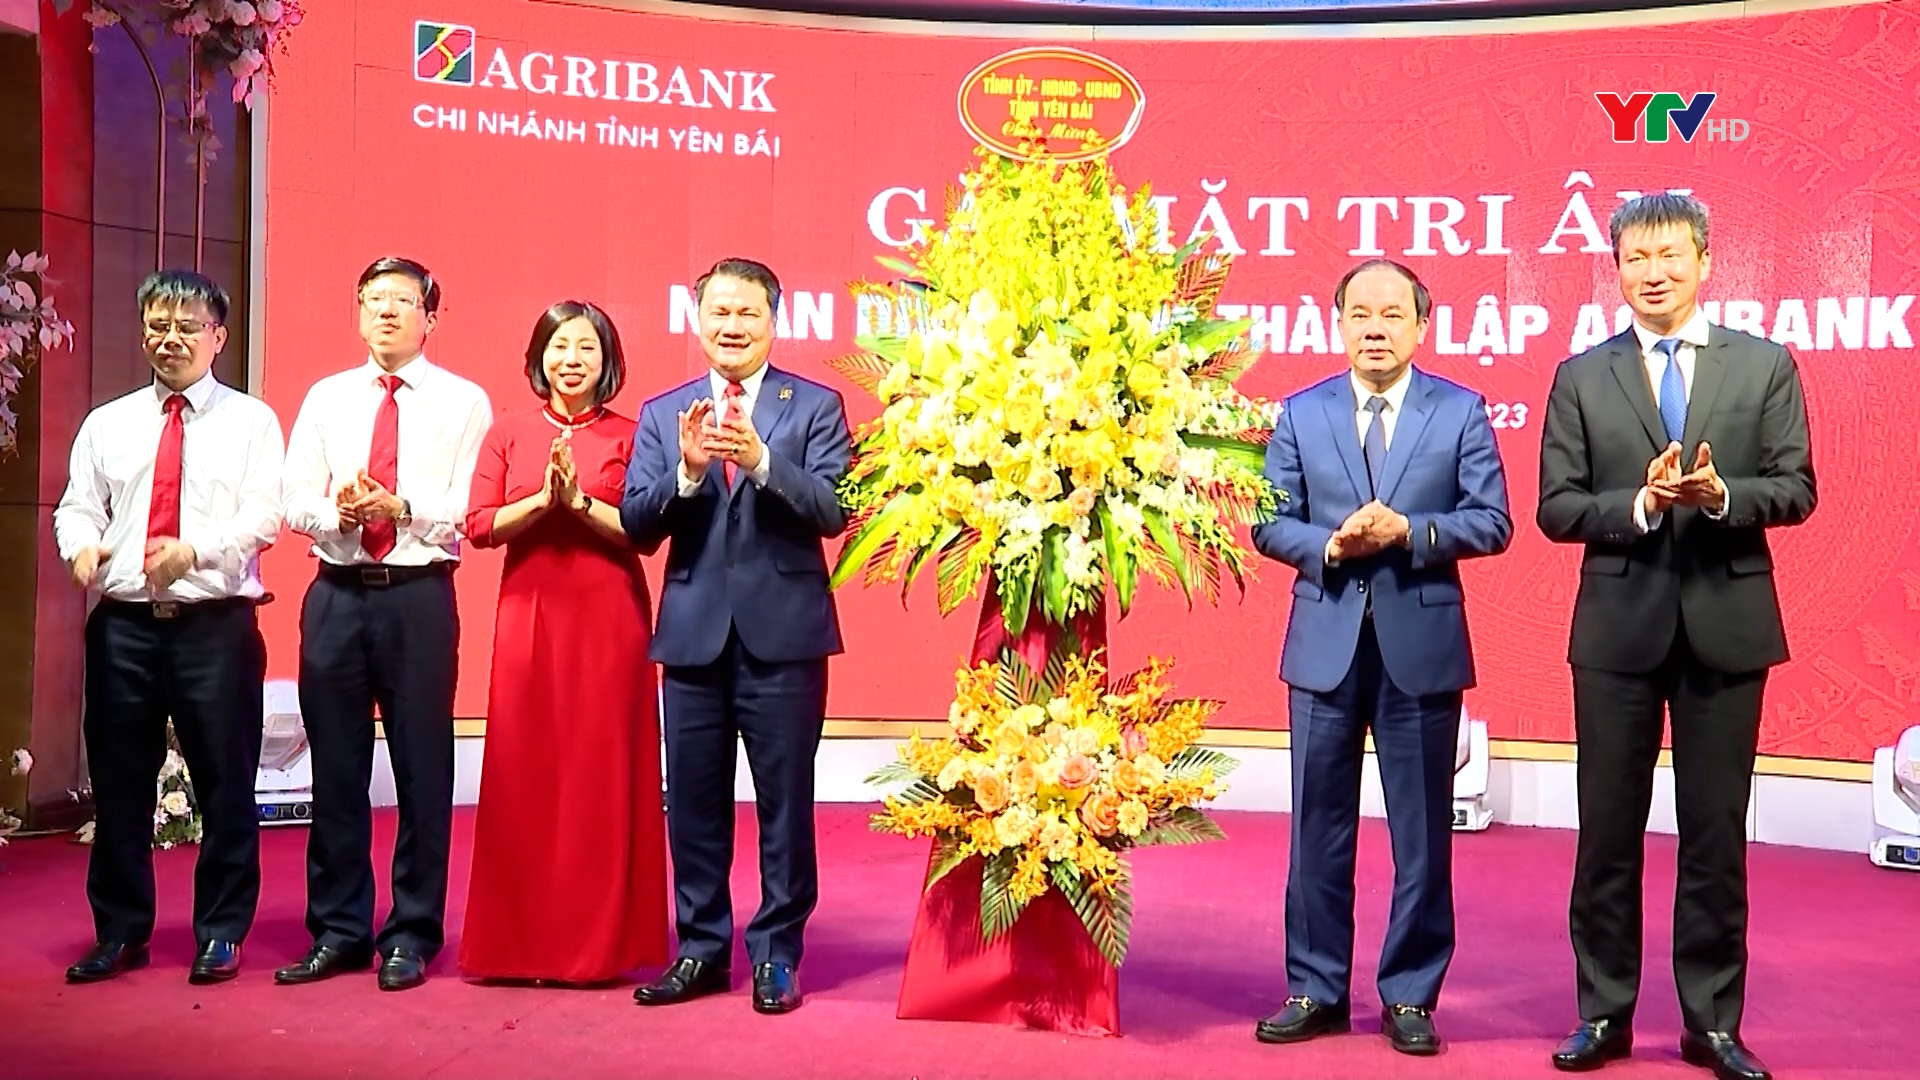 Agribank Chi nhánh tỉnh Yên Bái gặp mặt, tri ân khách hàng